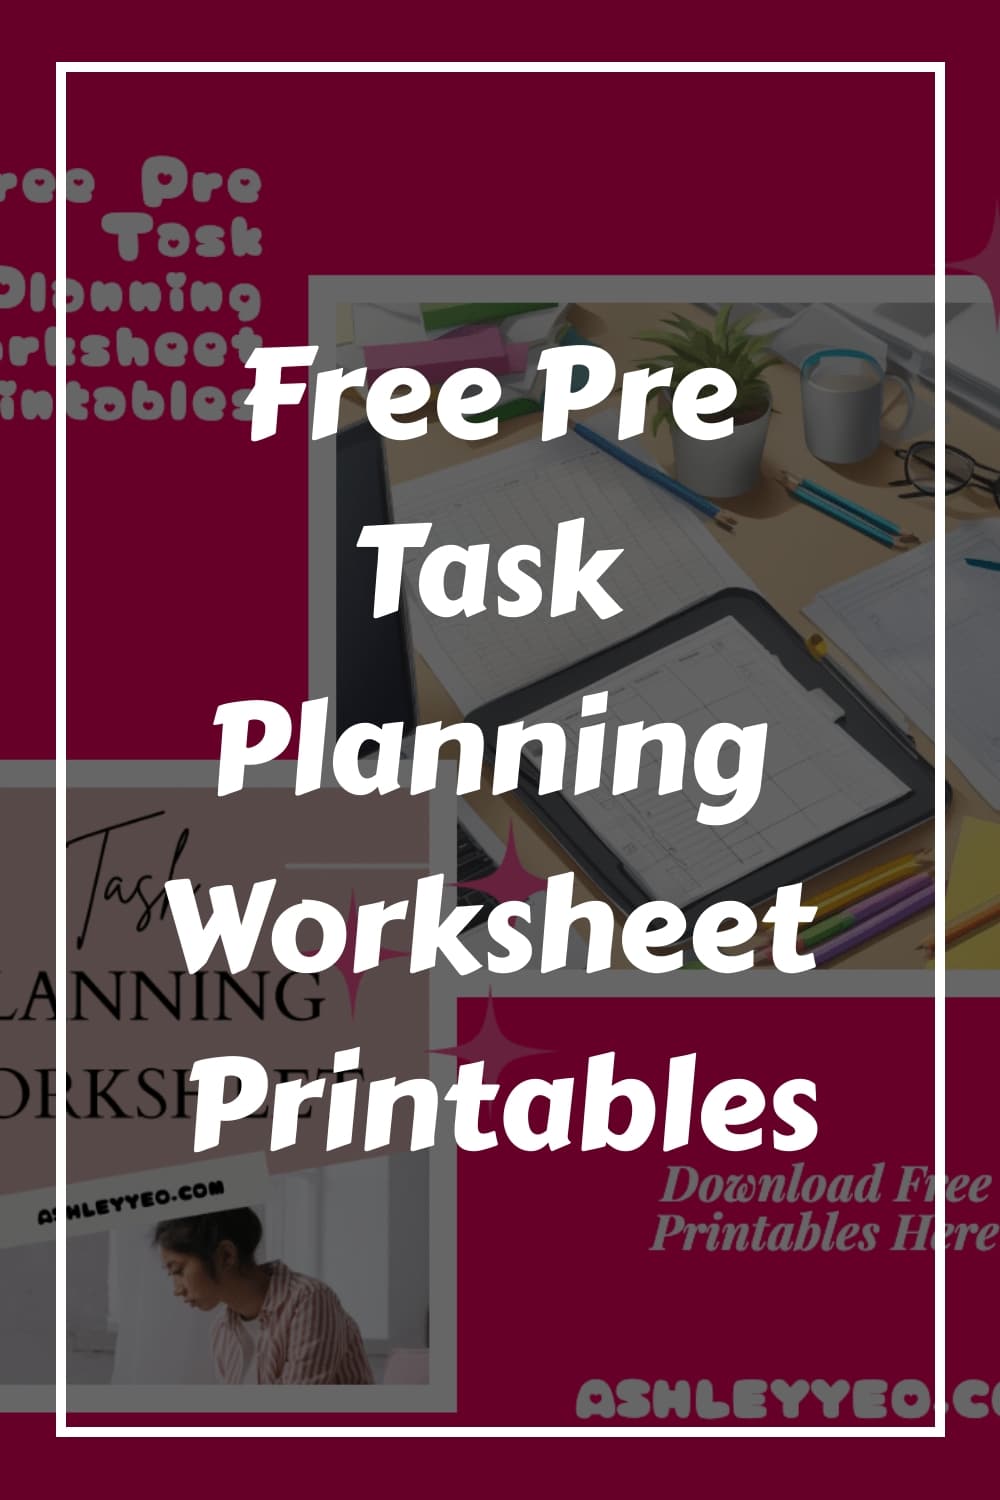 Free Pre Task Planning Worksheet Printables